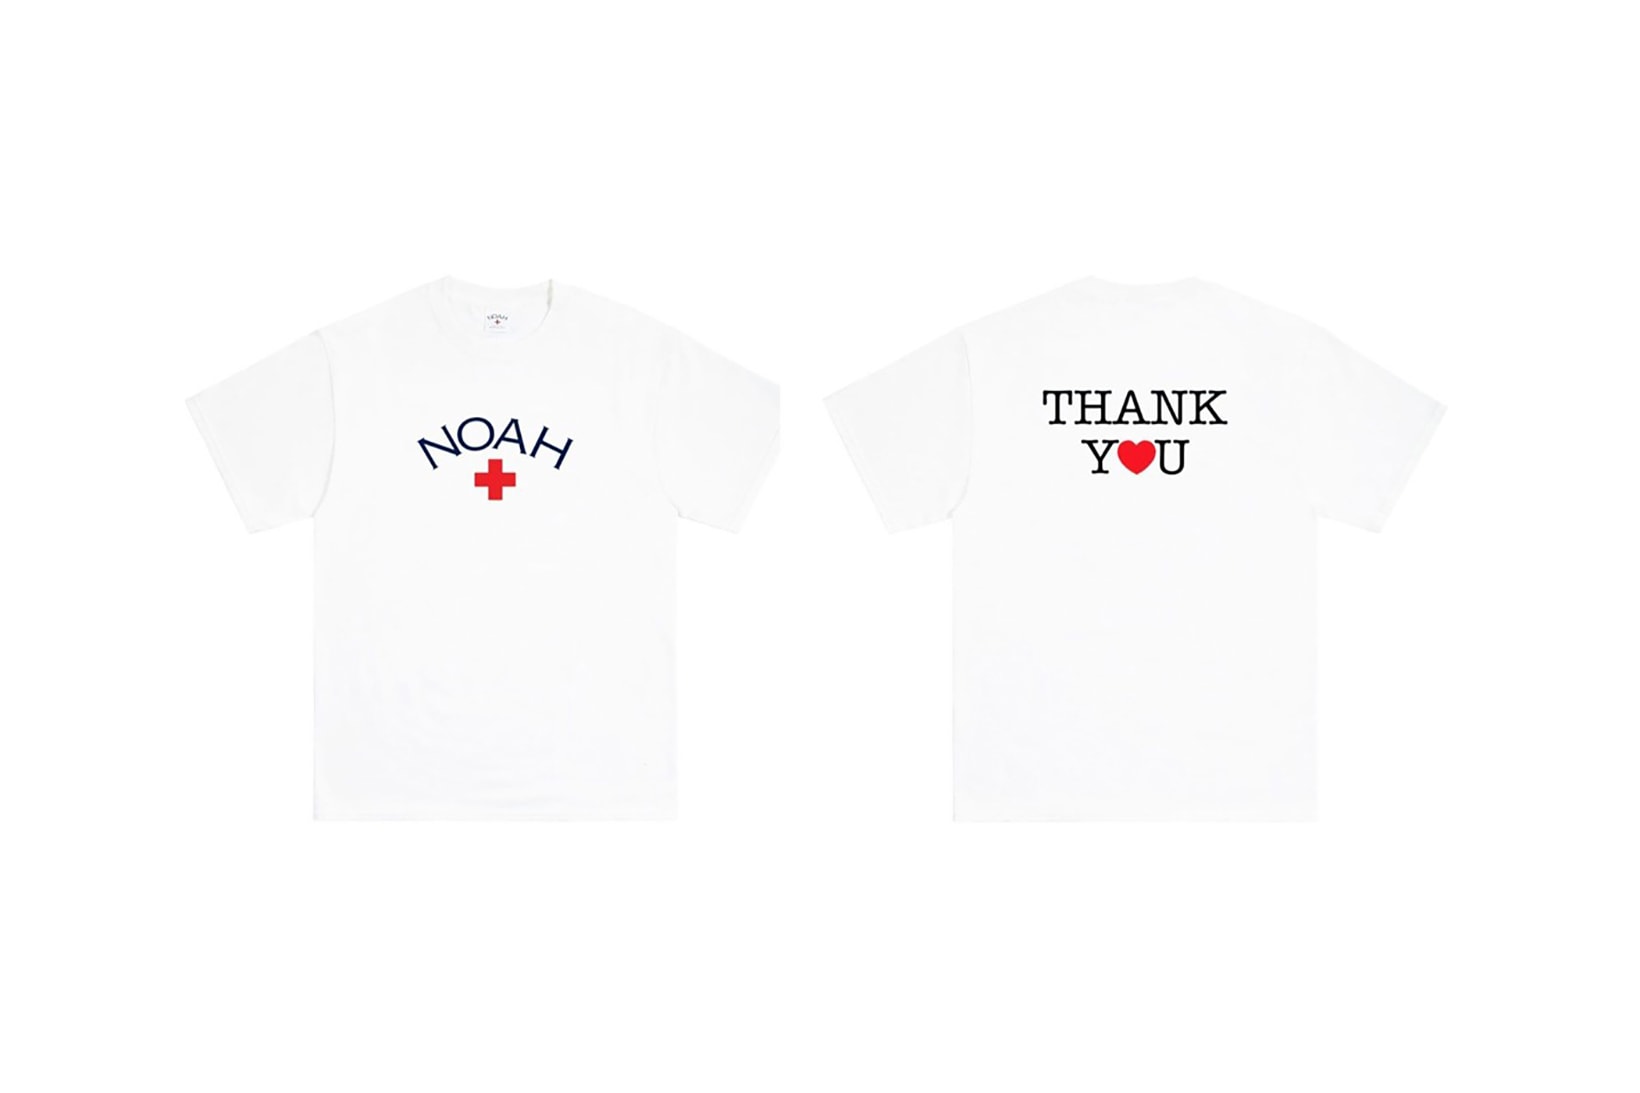 noah thank you core logo t shirt coronavirus covid19 pandemic relief